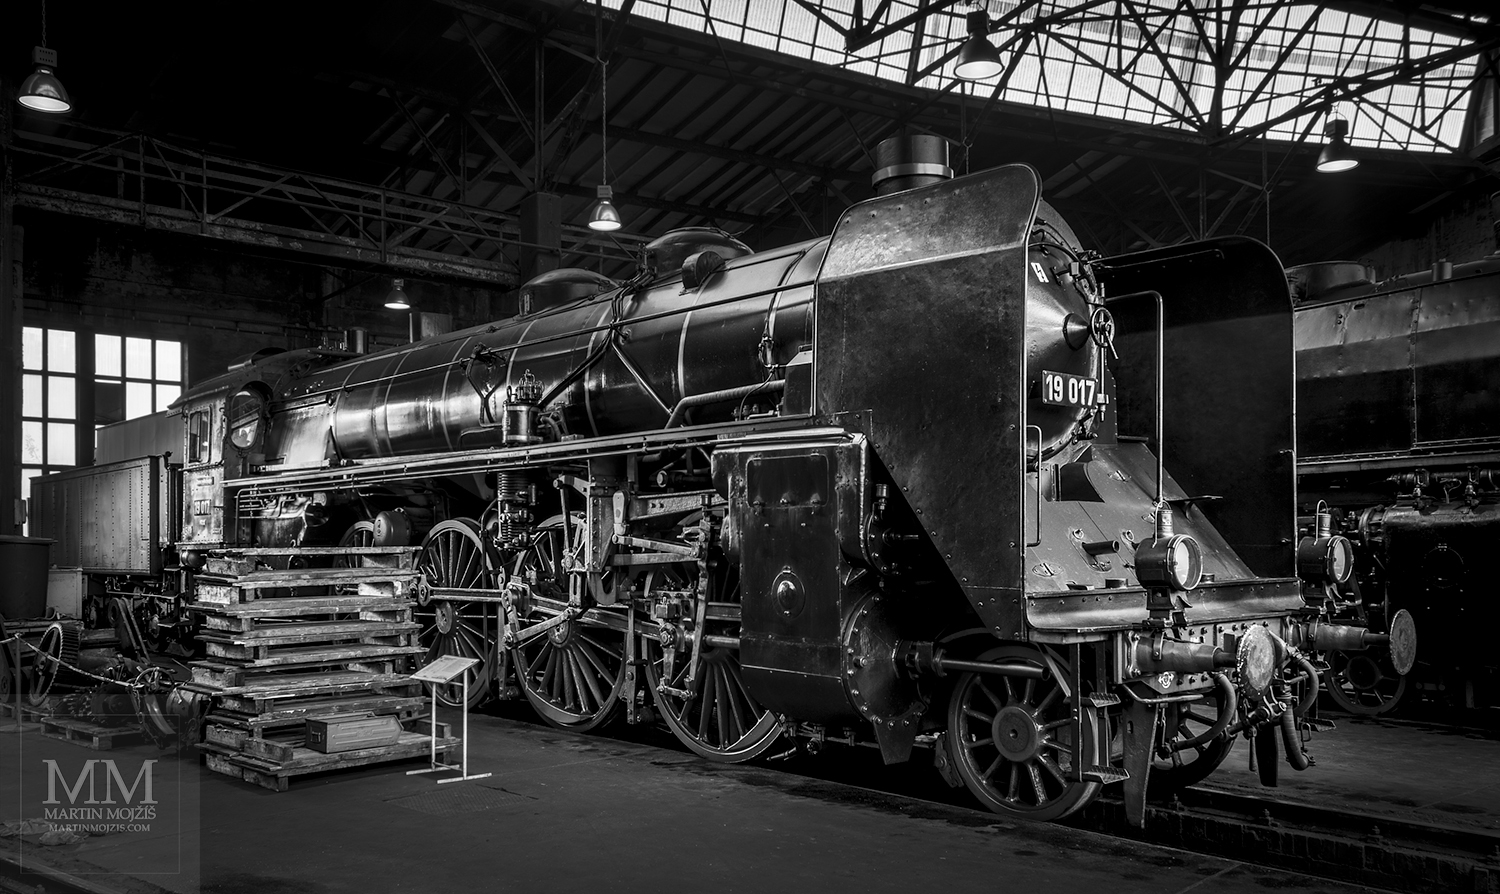 Parní lokomotiva 19 017. Eisenbahnmuseum Dresden. Železniční muzeum v Drážďanech.